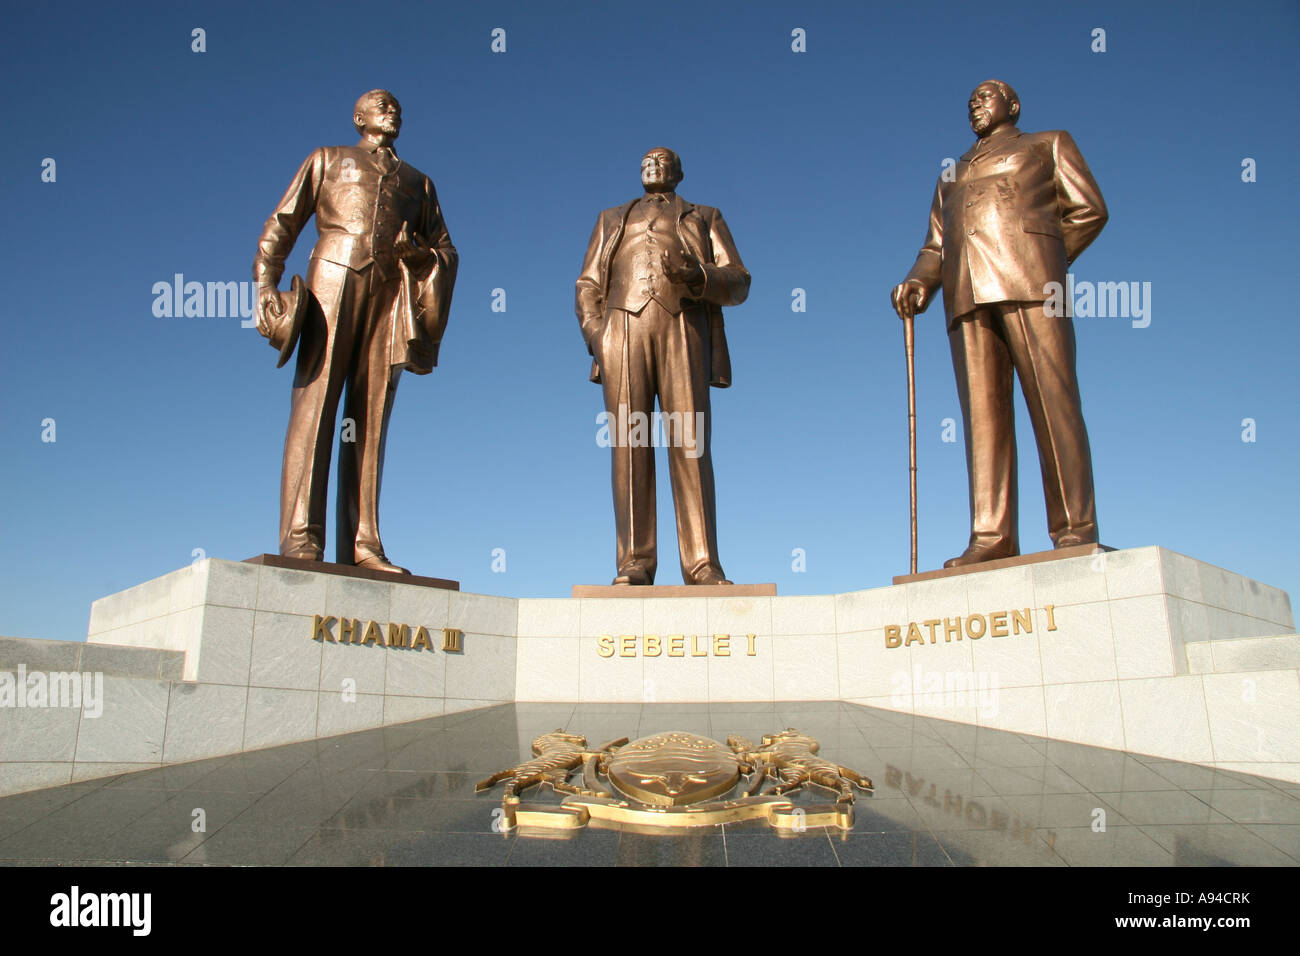 Monument à Gaborone de 3 chefs Khama III Sebele I et Bathoen I responsable d'assurer l'indépendance du Botswana Banque D'Images